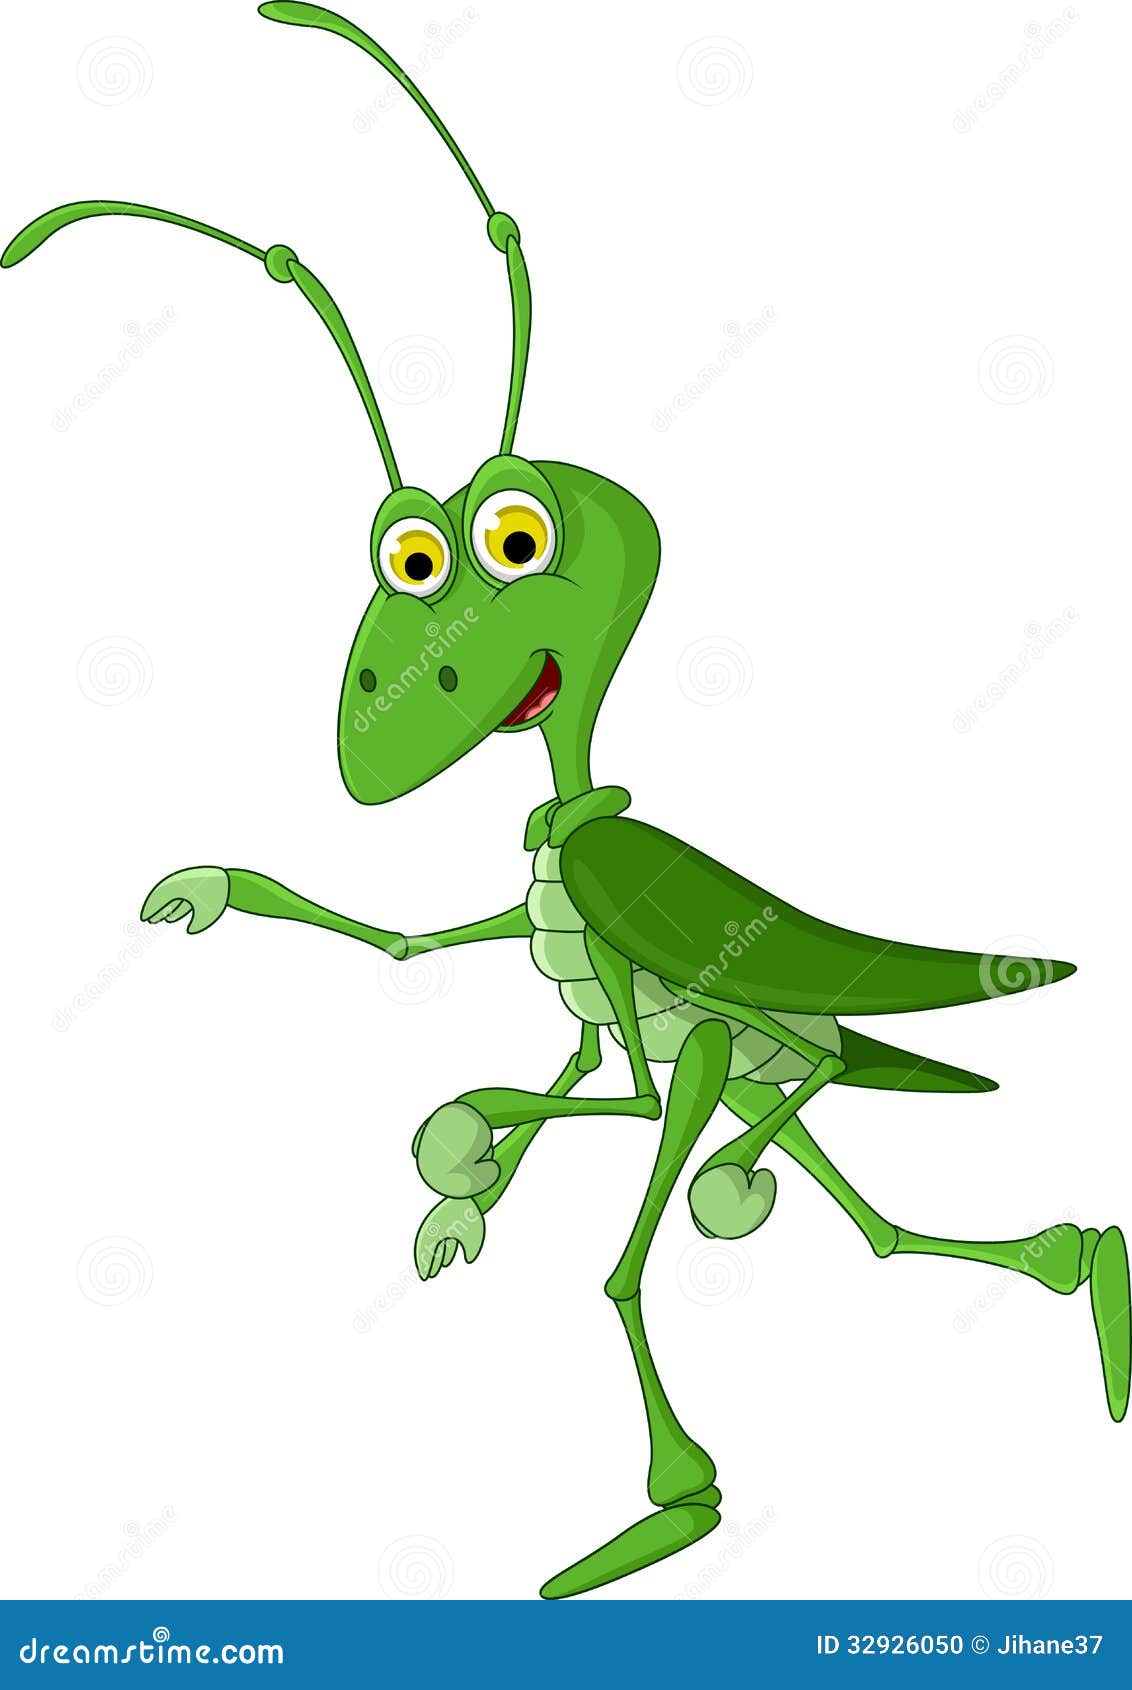 Cute Grasshopper Cartoon Walking Stock Illustration ...